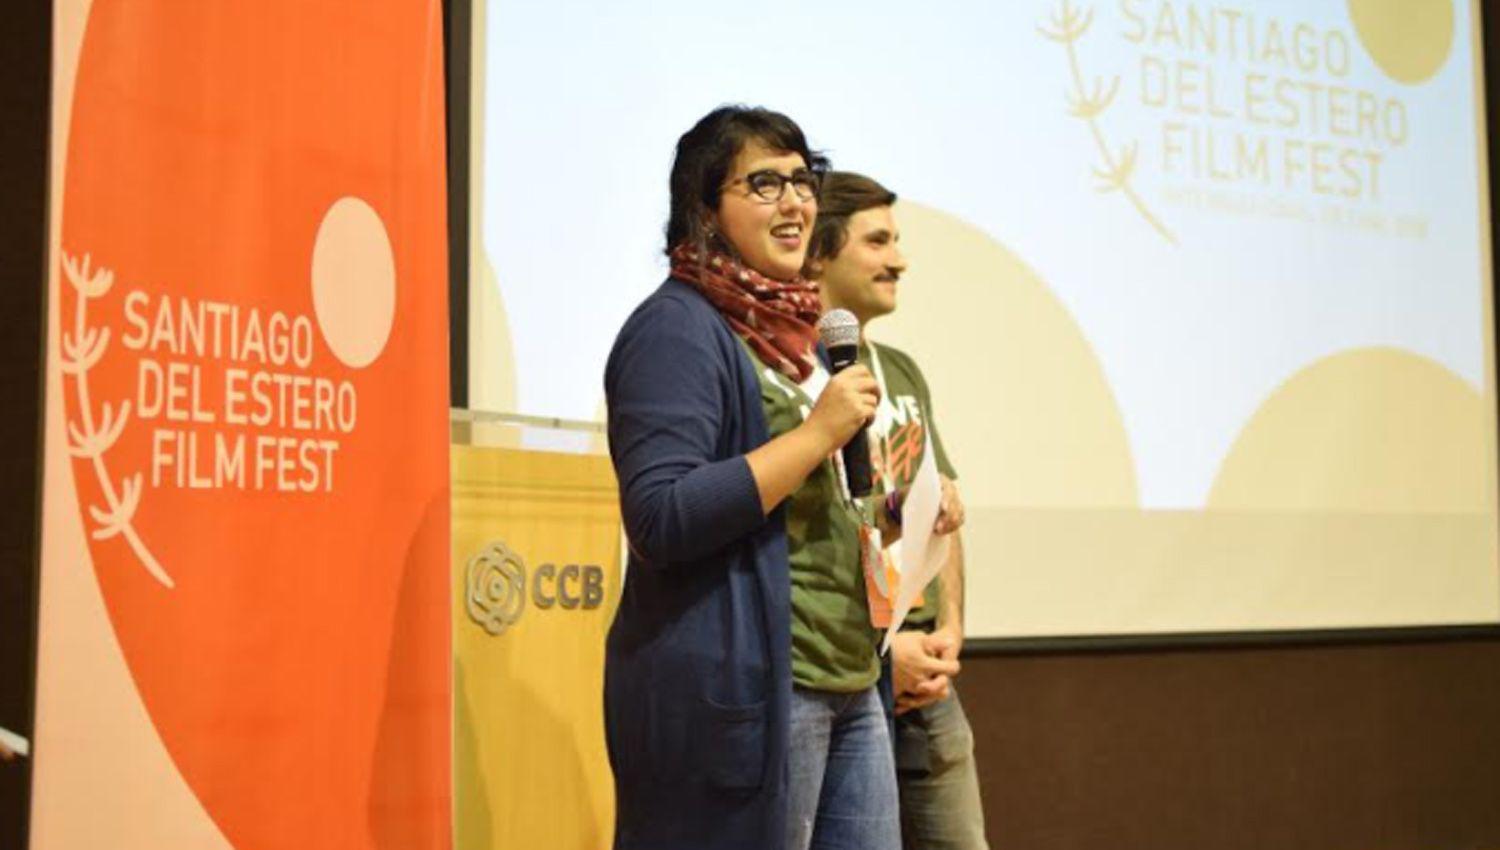 Juan Pablo Salomoacuten y Pichu Tomsic confirmaron a EL LIBERAL que el Santiago del Estero Film Fest Internacional de cine se realizaraacute desde el 22 hasta el 26 de junio